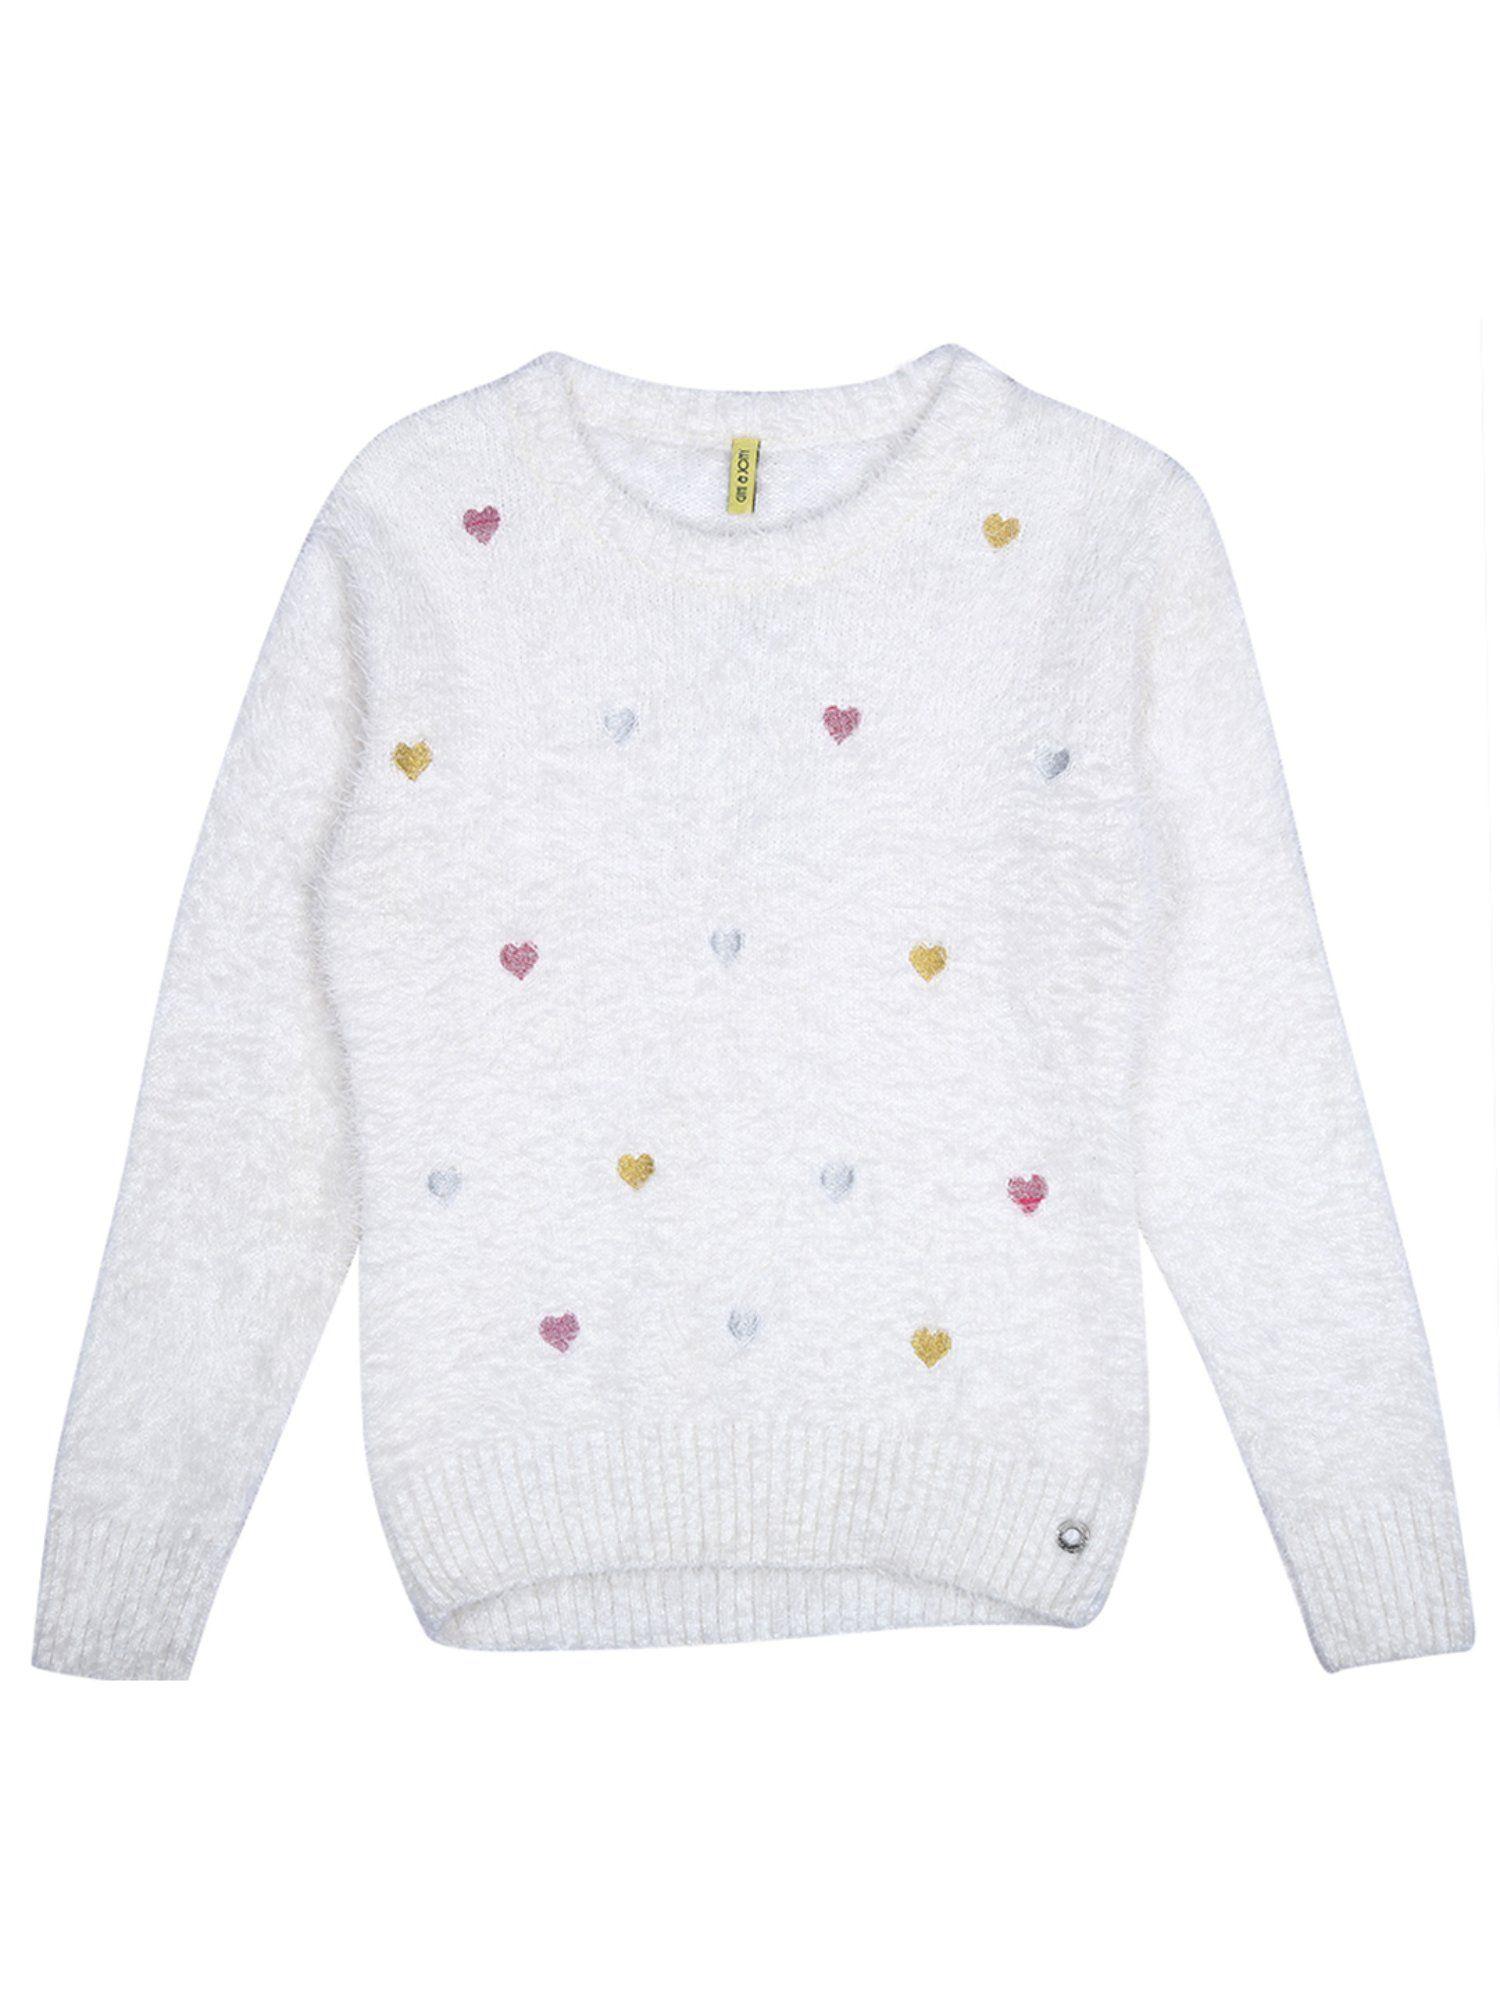 girls-white-woven-fleece-sweater-full-sleeves